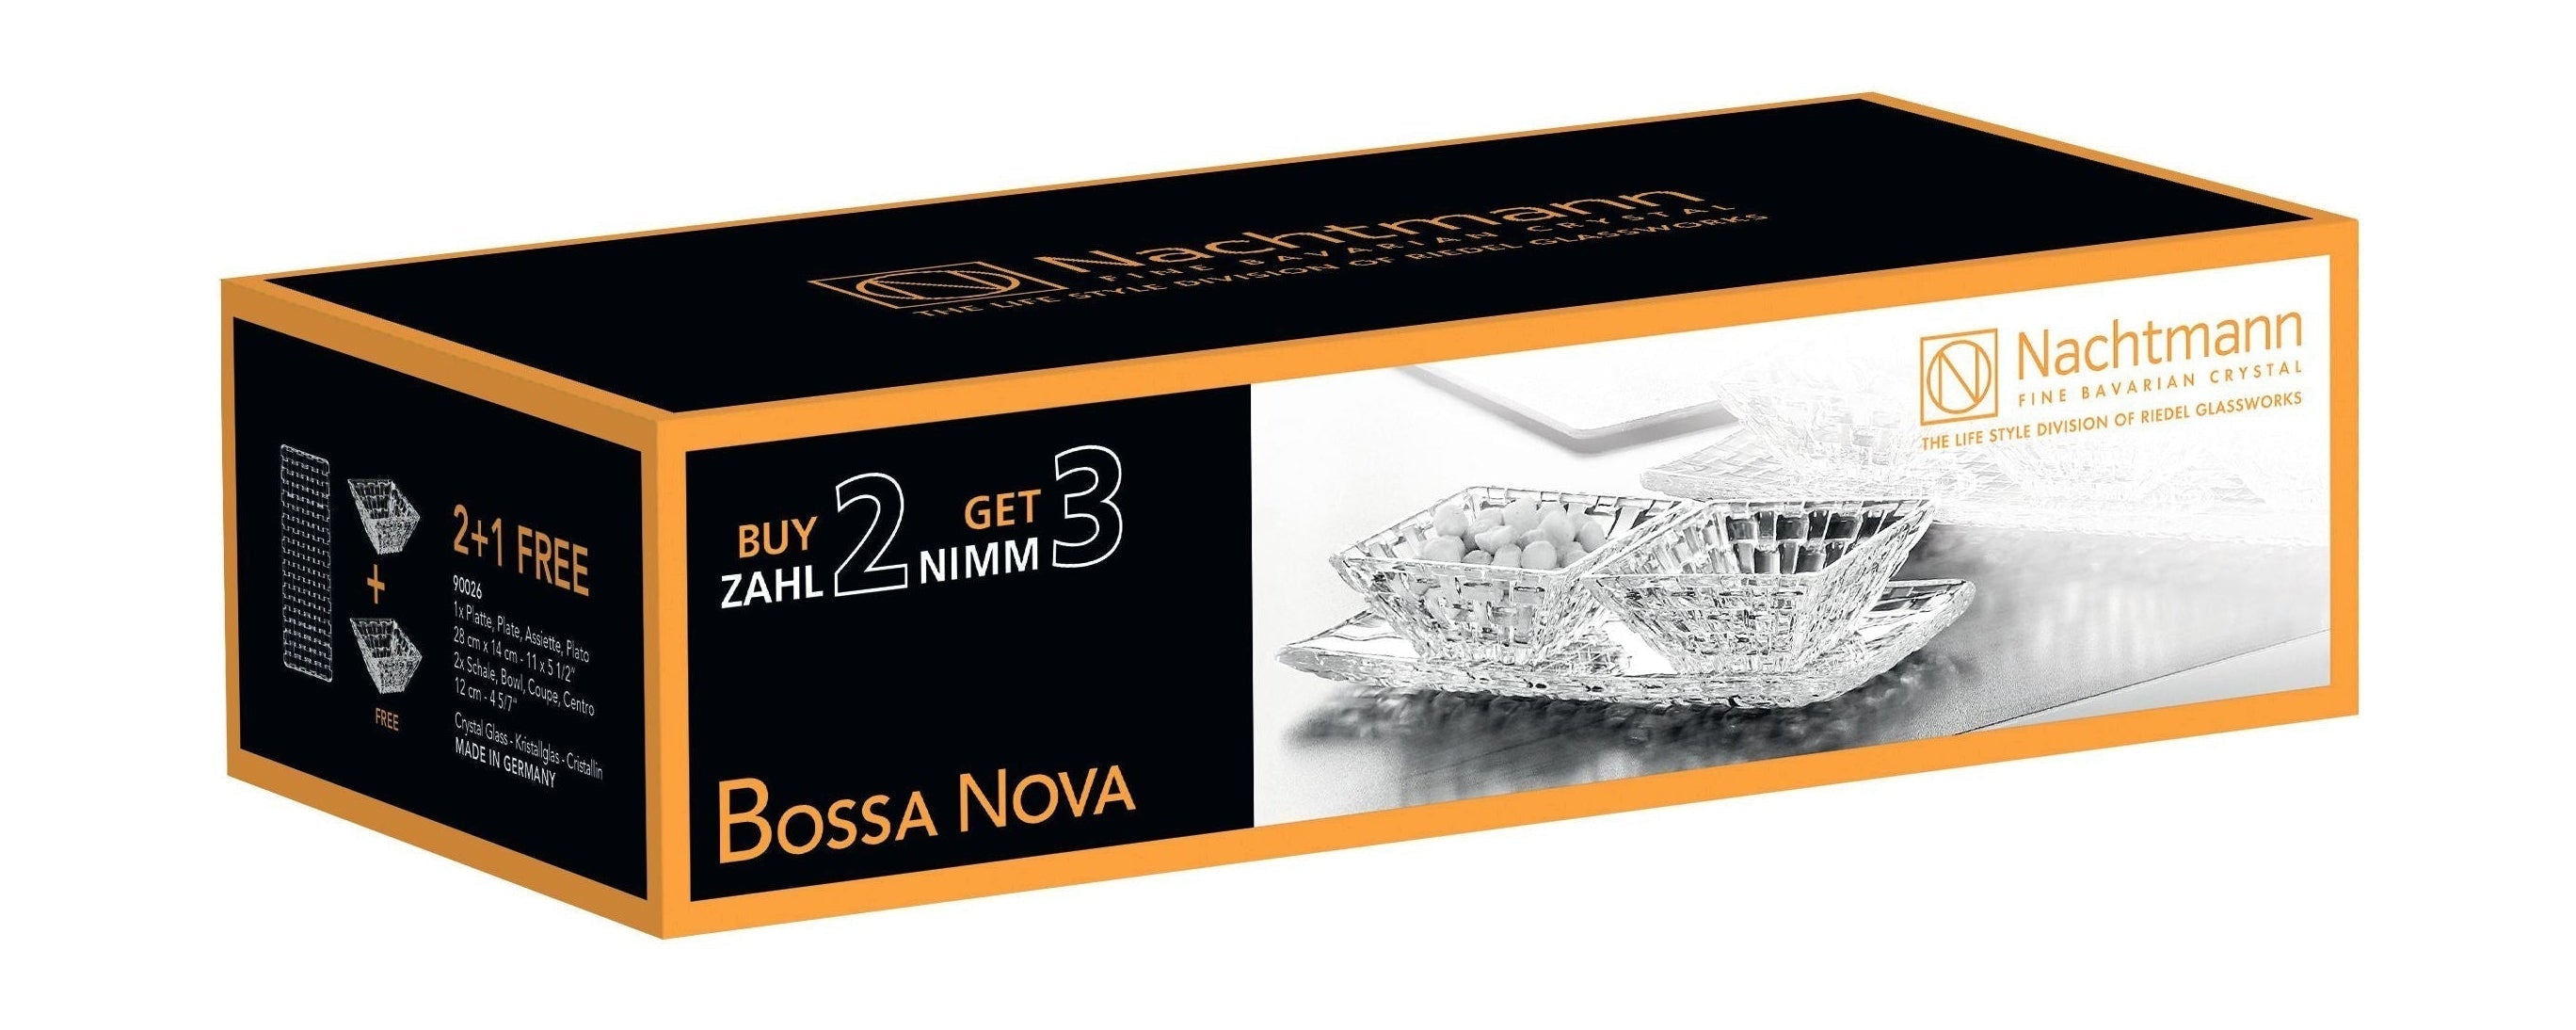 Nachtmann Bossa nova krystal skåle fordel sæt, sæt med 3